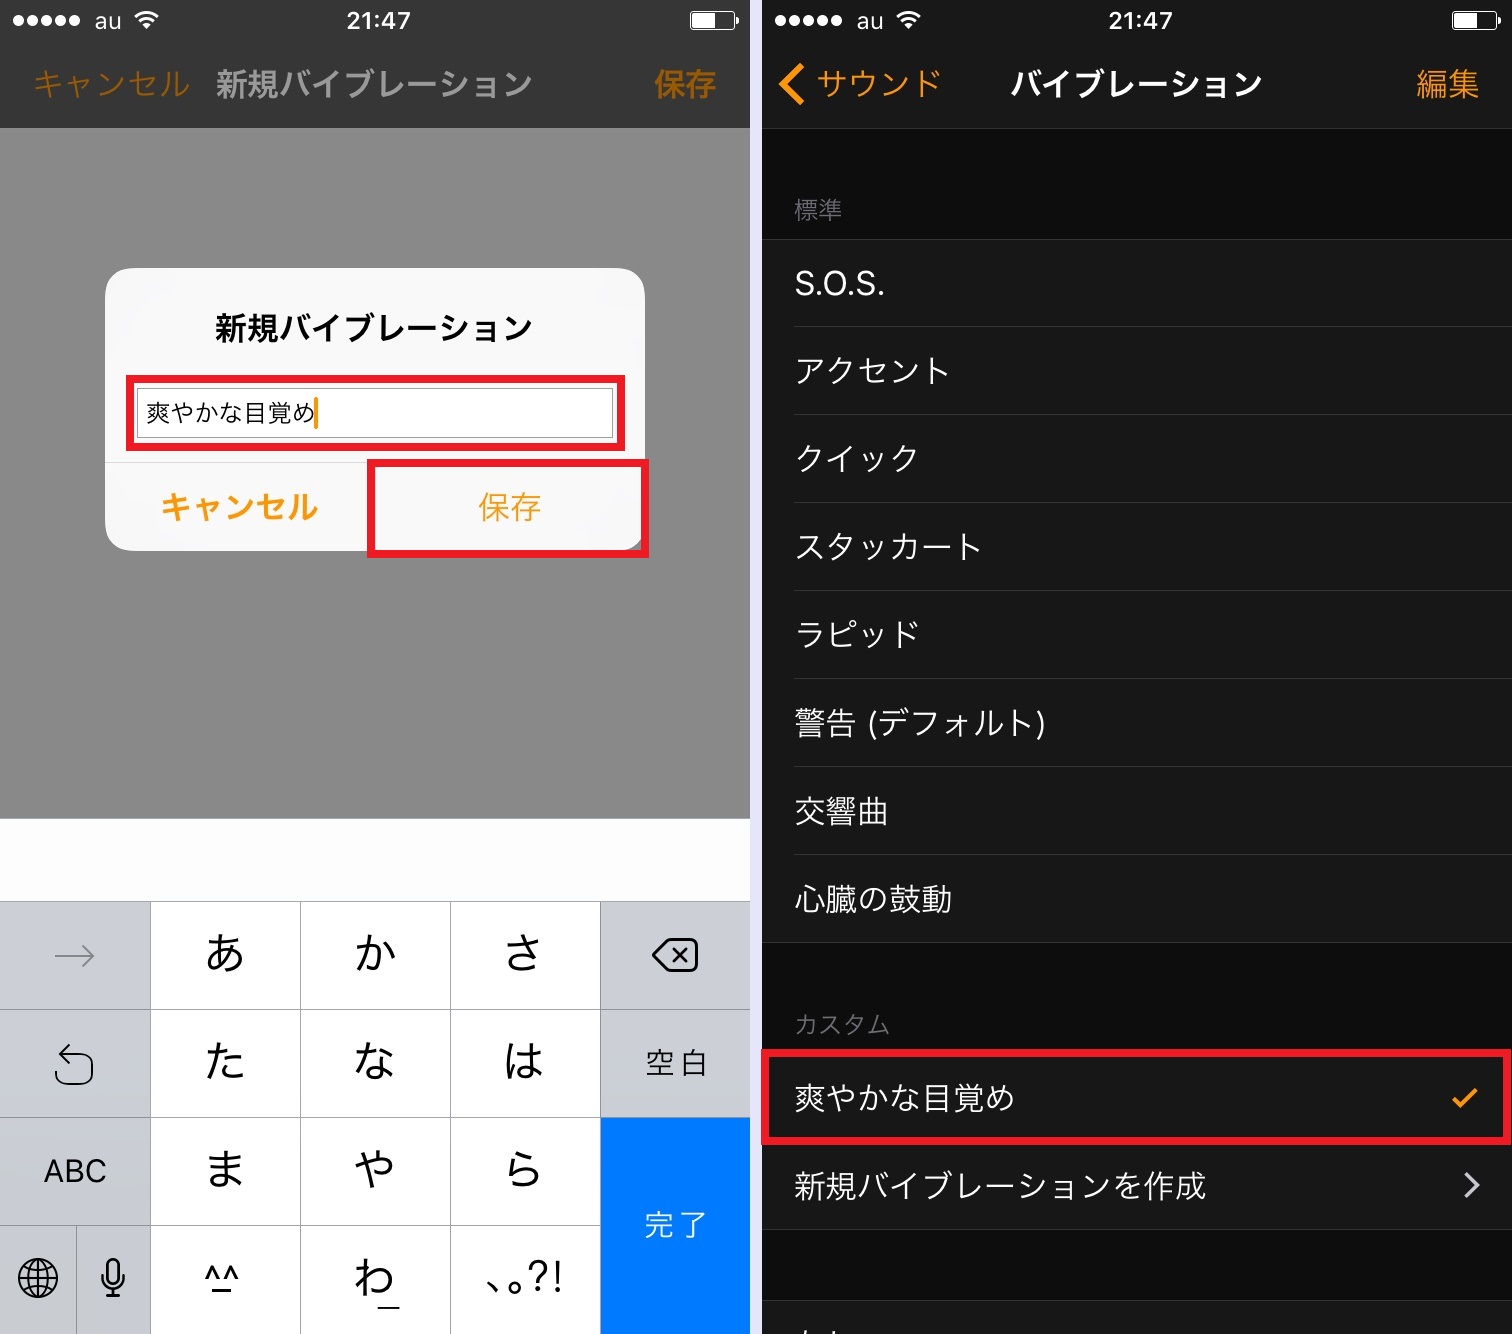 乗り過ごし防止の強い味方 バイブレーションのみのアラーム の使い方 Iphone Tips Engadget 日本版